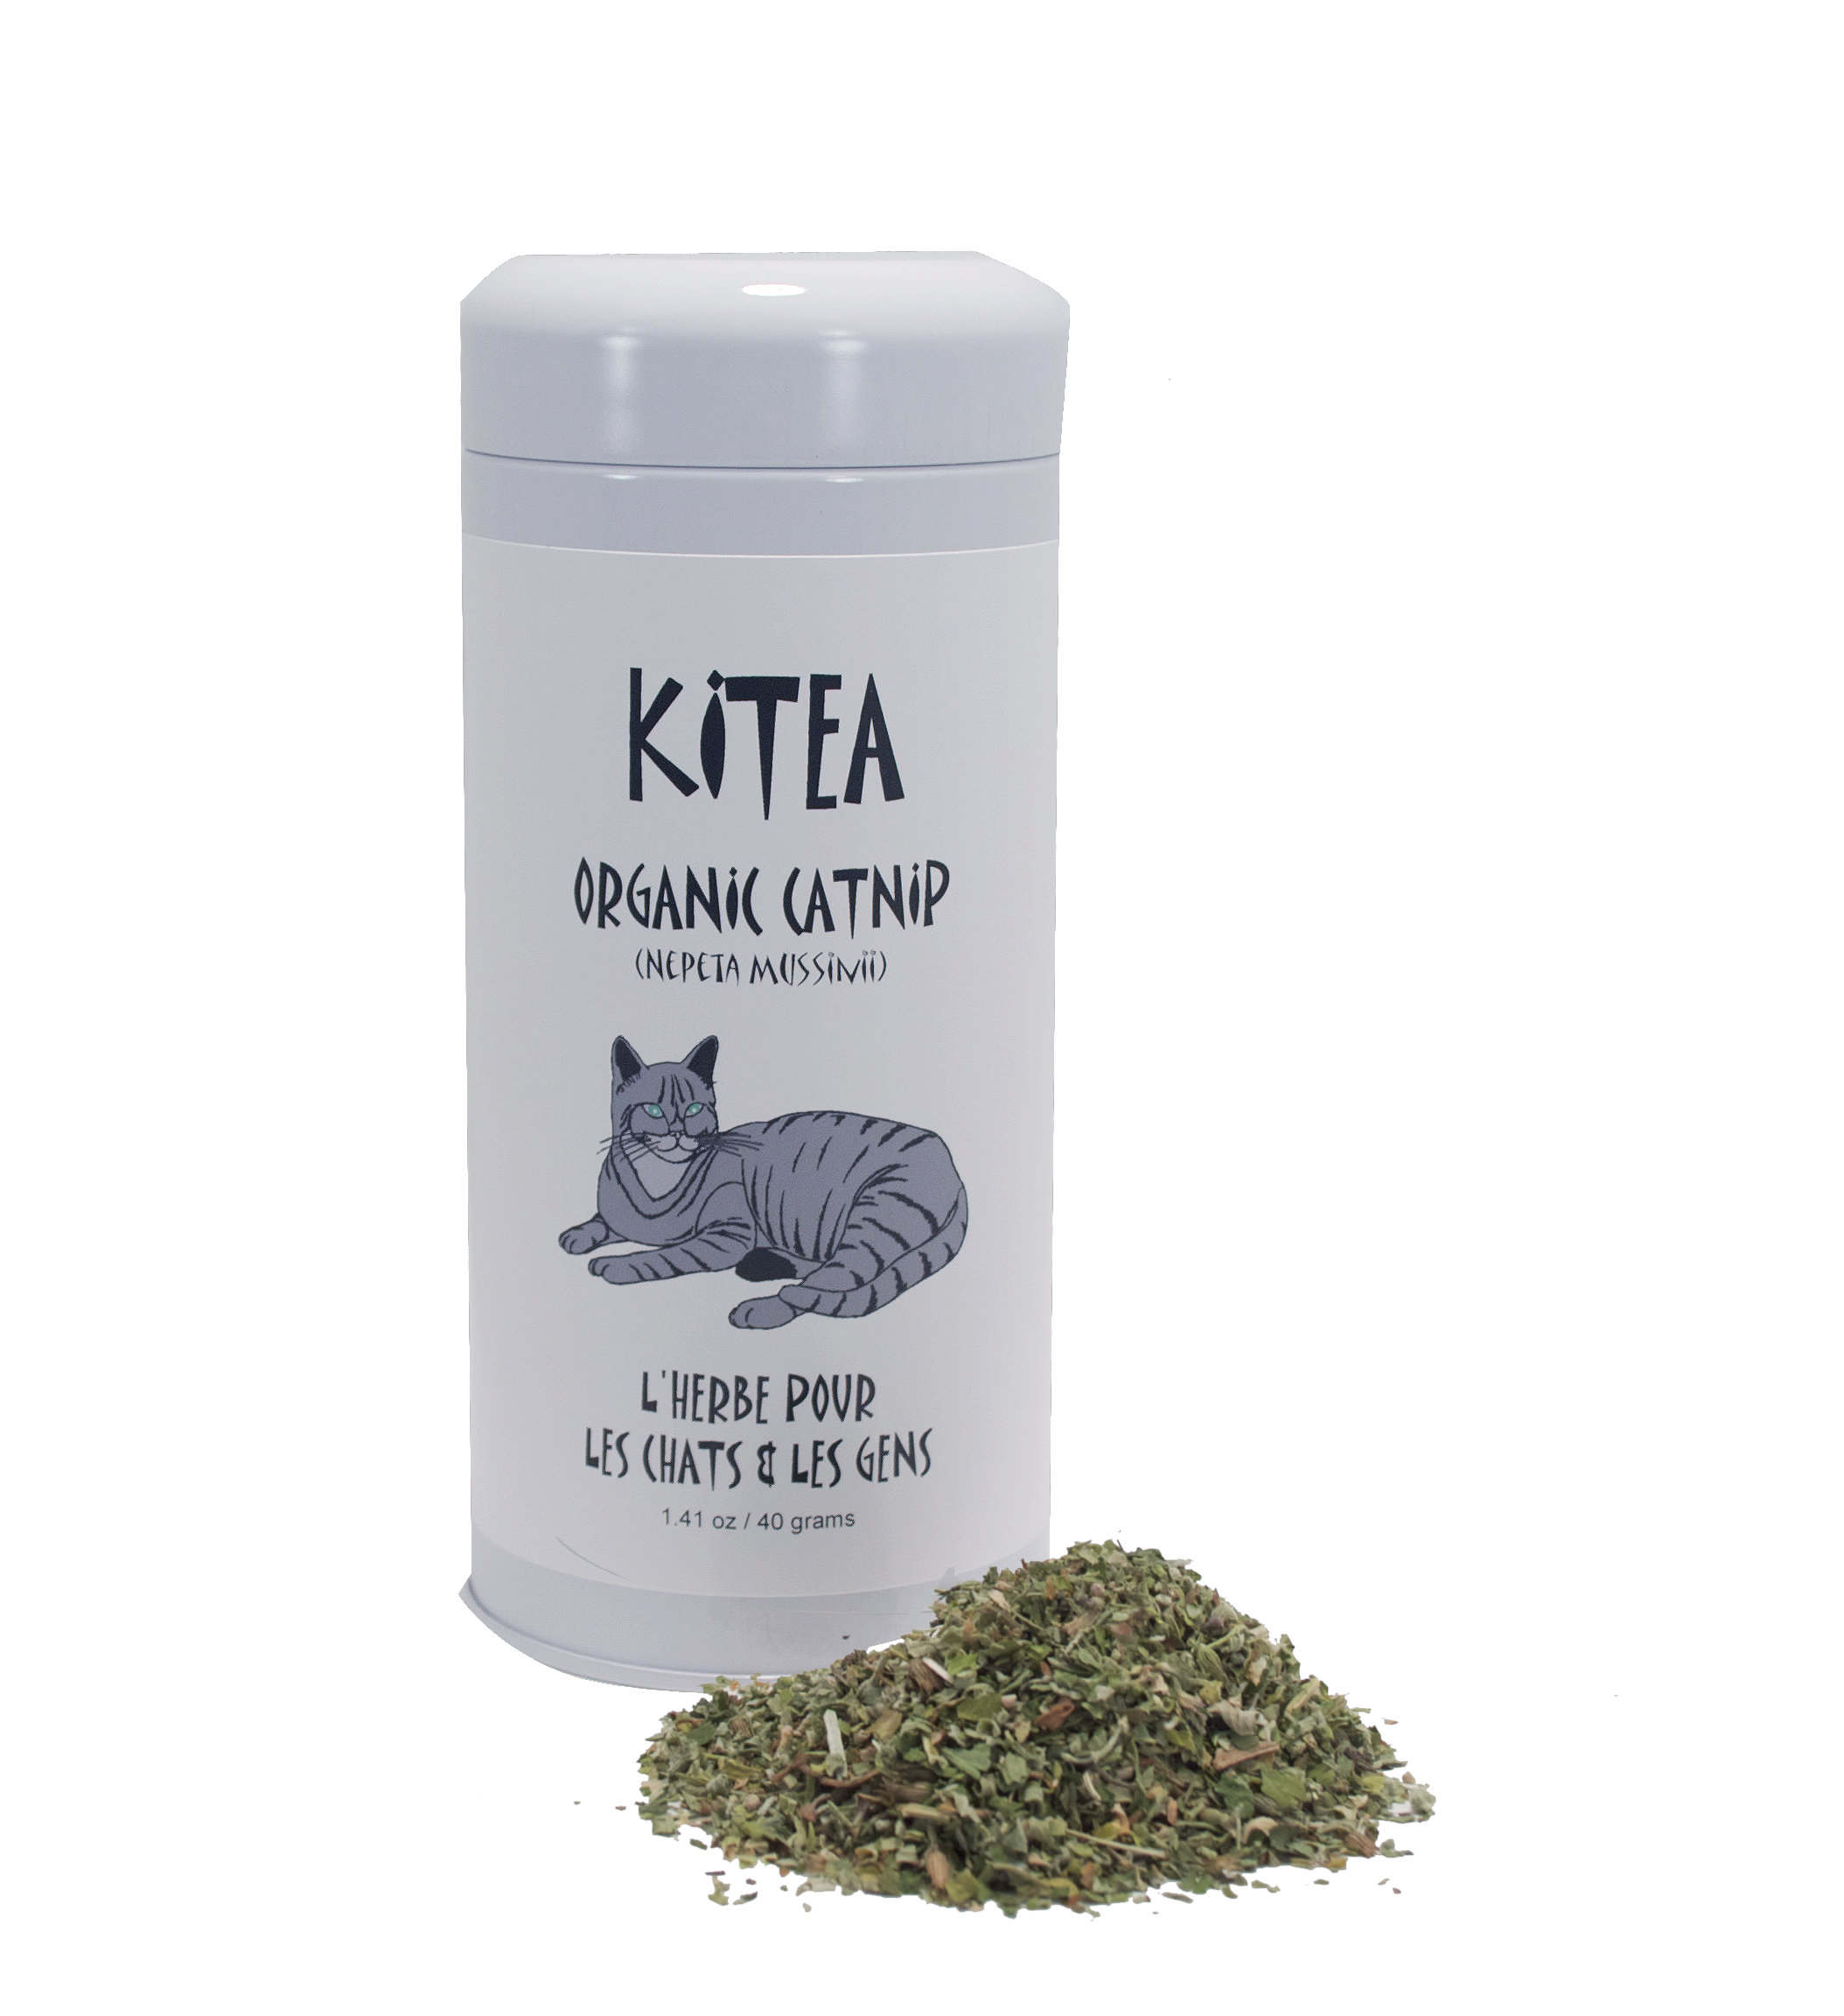 Kitea-organic-catnip Catnip Nepeta cataria